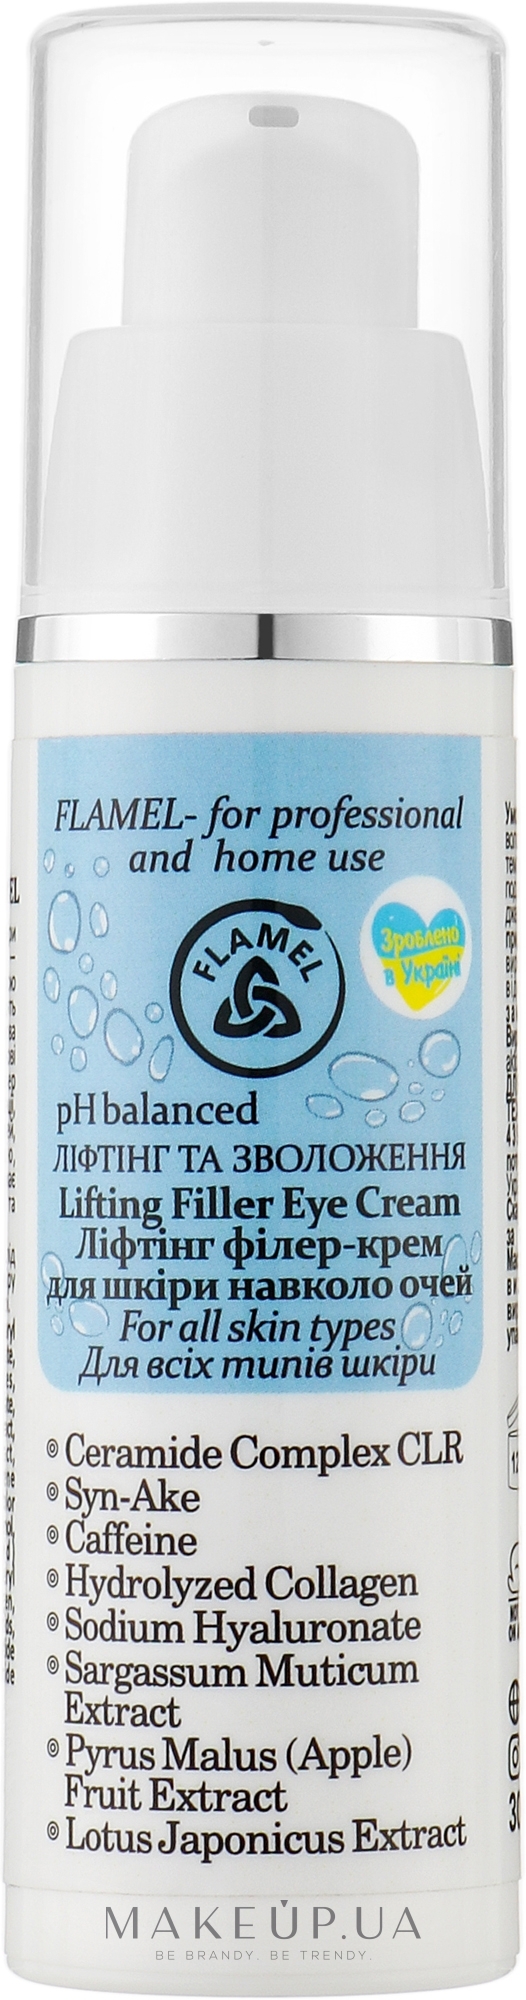 Ліфтинг-філер крем для шкіри навколо очей - FLAMEL Lifting Filler Eye Cream — фото 30ml